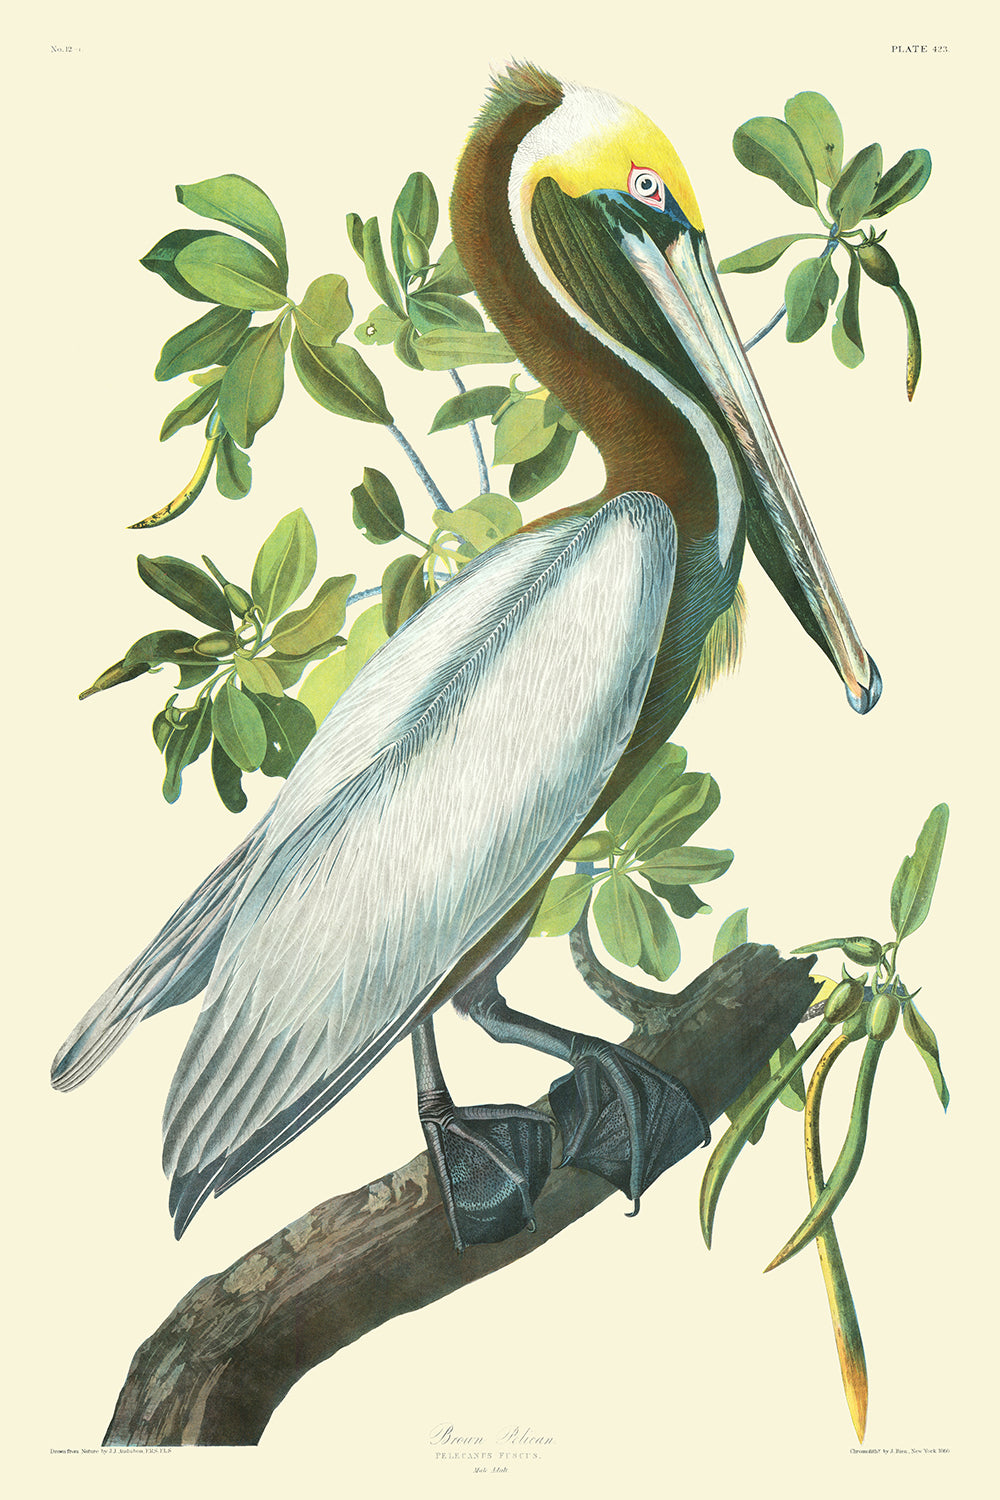 Brauner Pelikan von John James Audubon, 1827